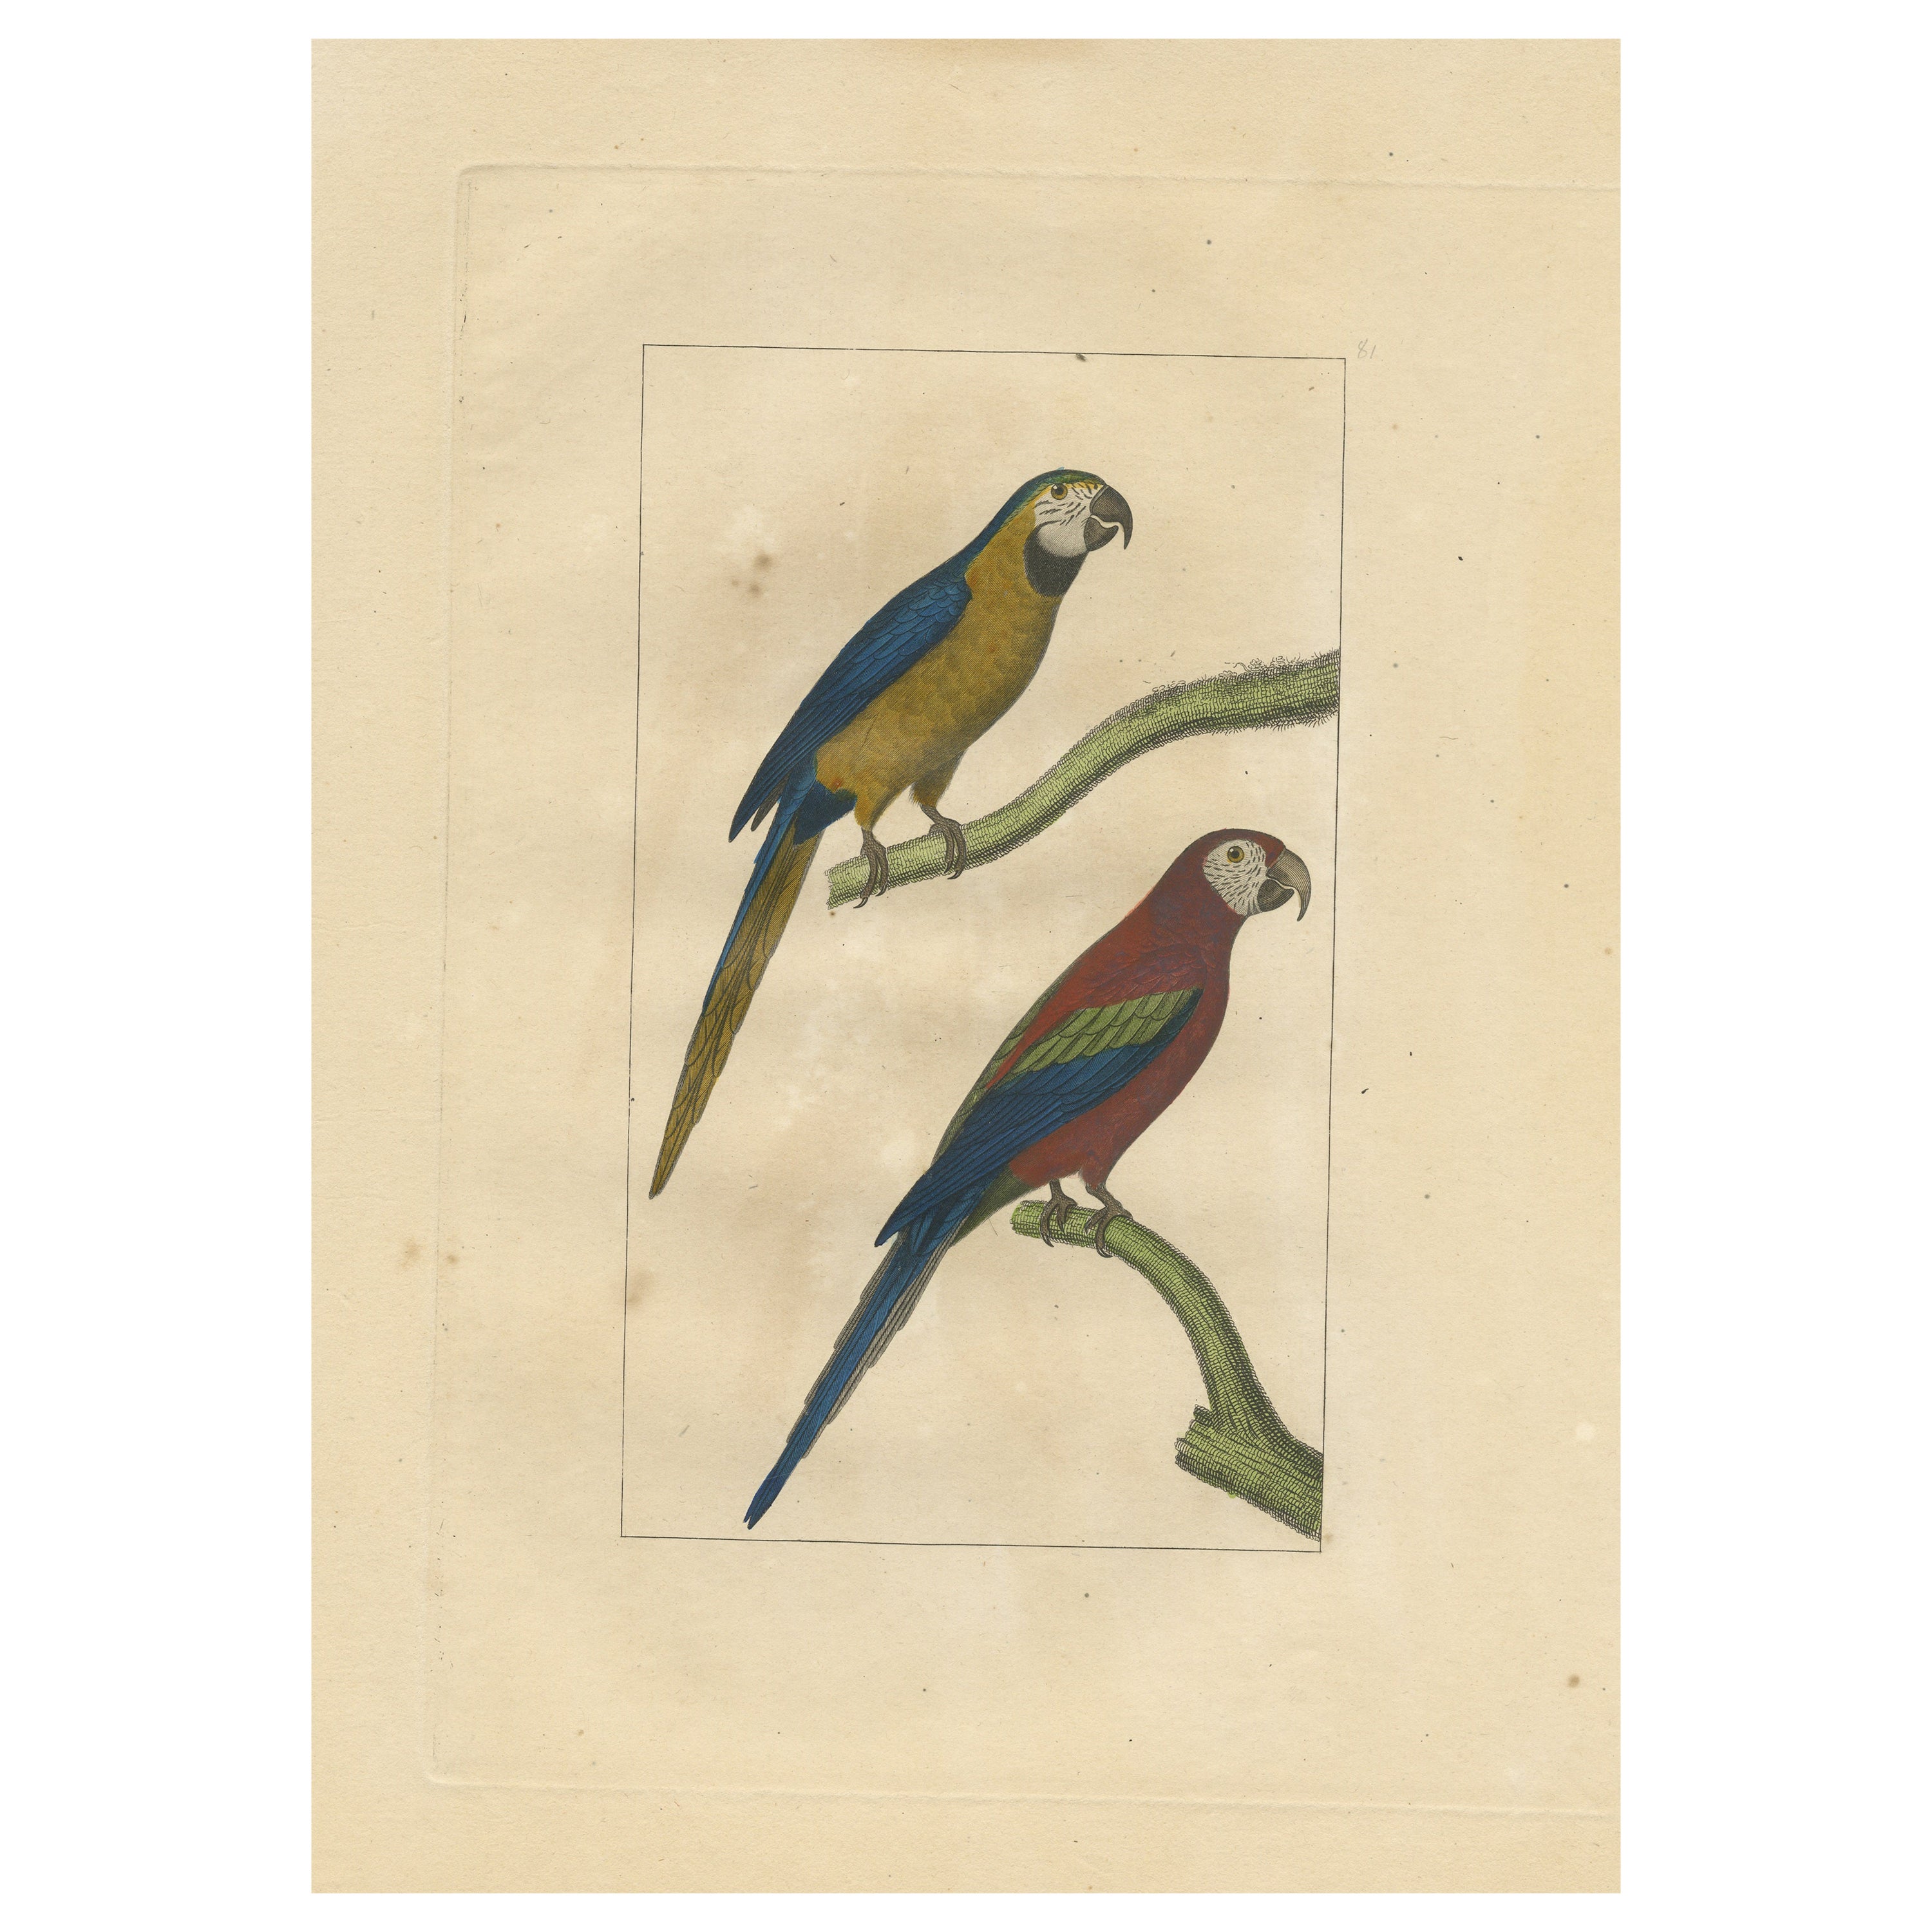 Handkolorierter antiker Vogeldruck mit Papageien